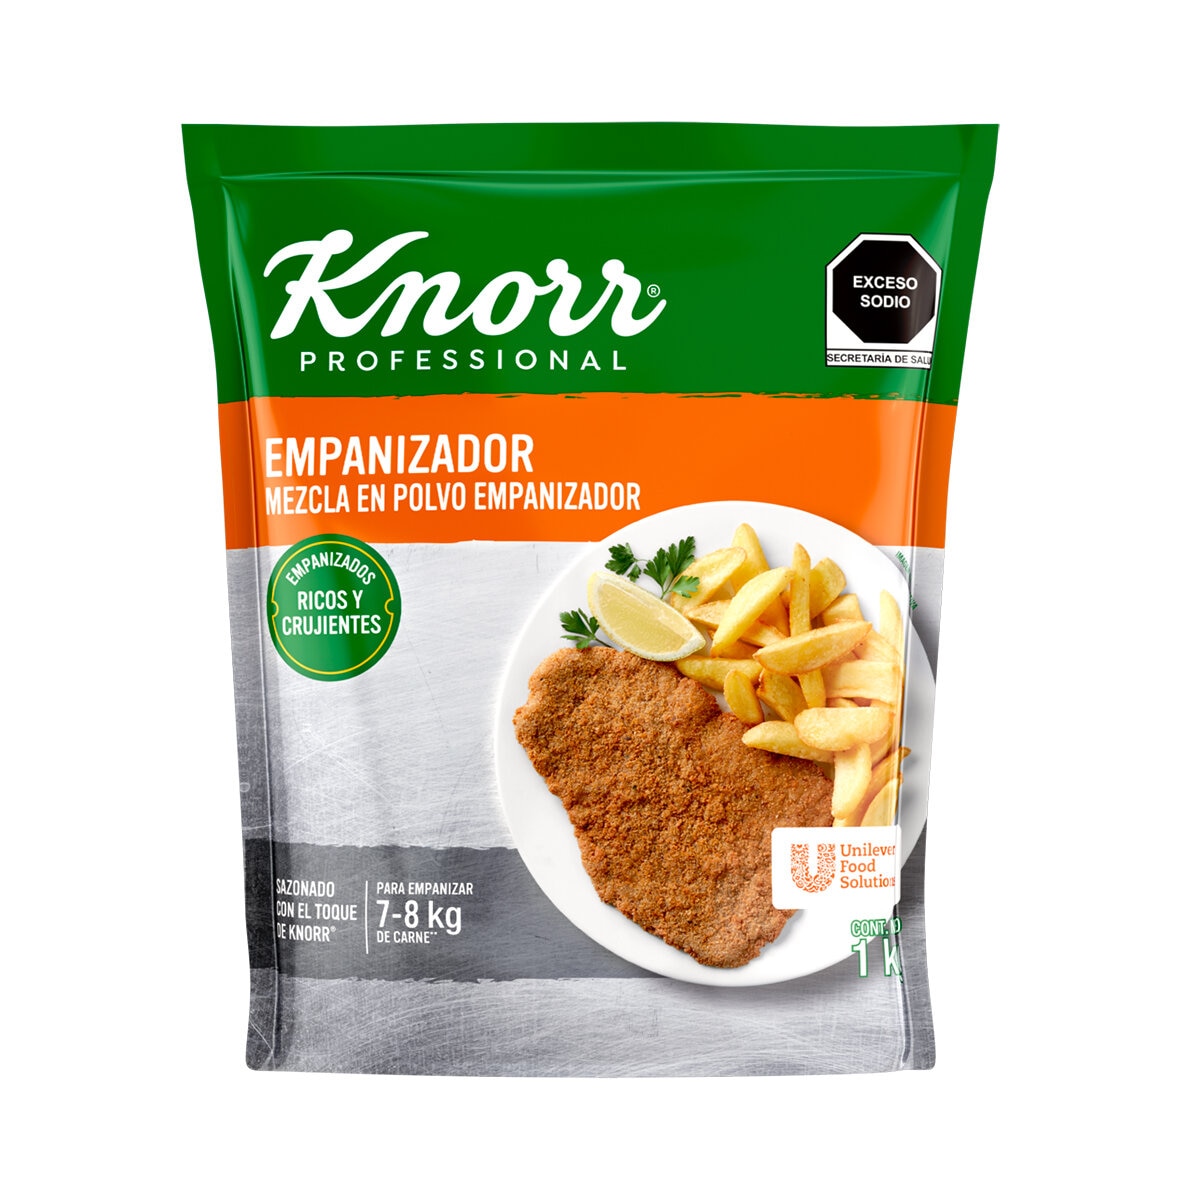 Knorr Professional Empanizador 1kg